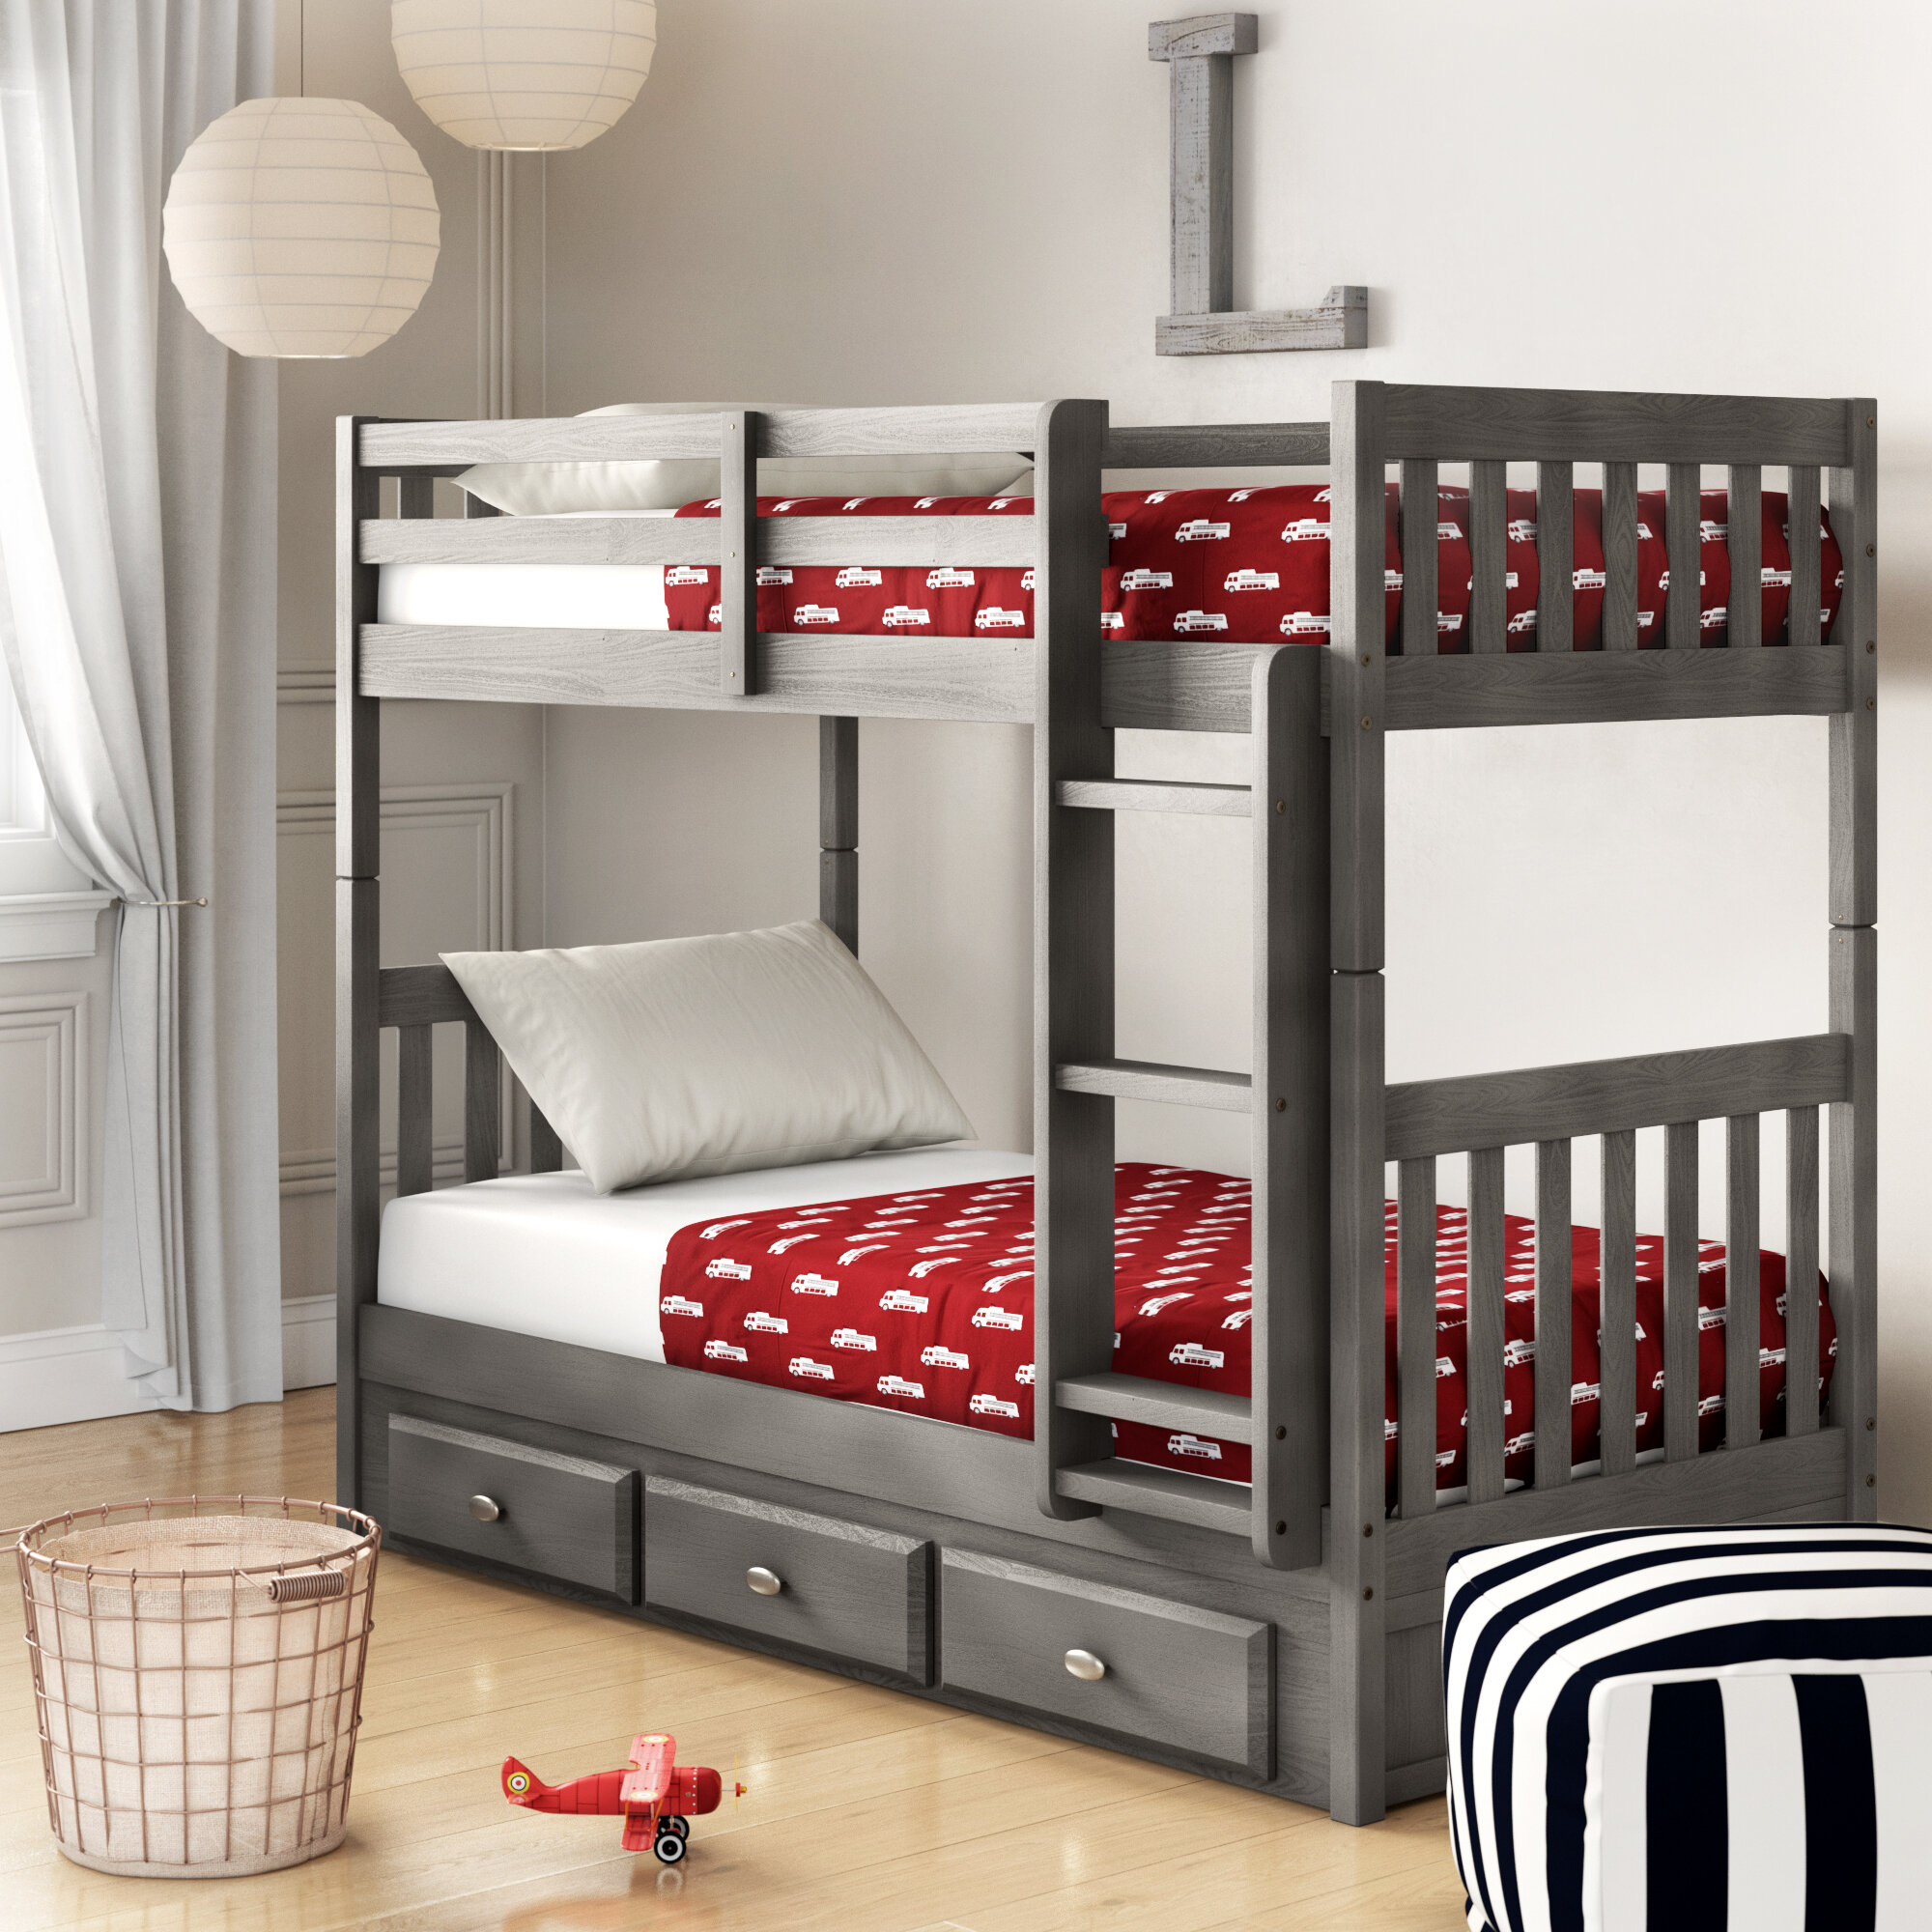 Детские двух. Двухъярусная кровать Бастион 357640. Детская кровать Твинс-1. Двухъярусная кровать для детей. Двухэтажная кровать для детей.